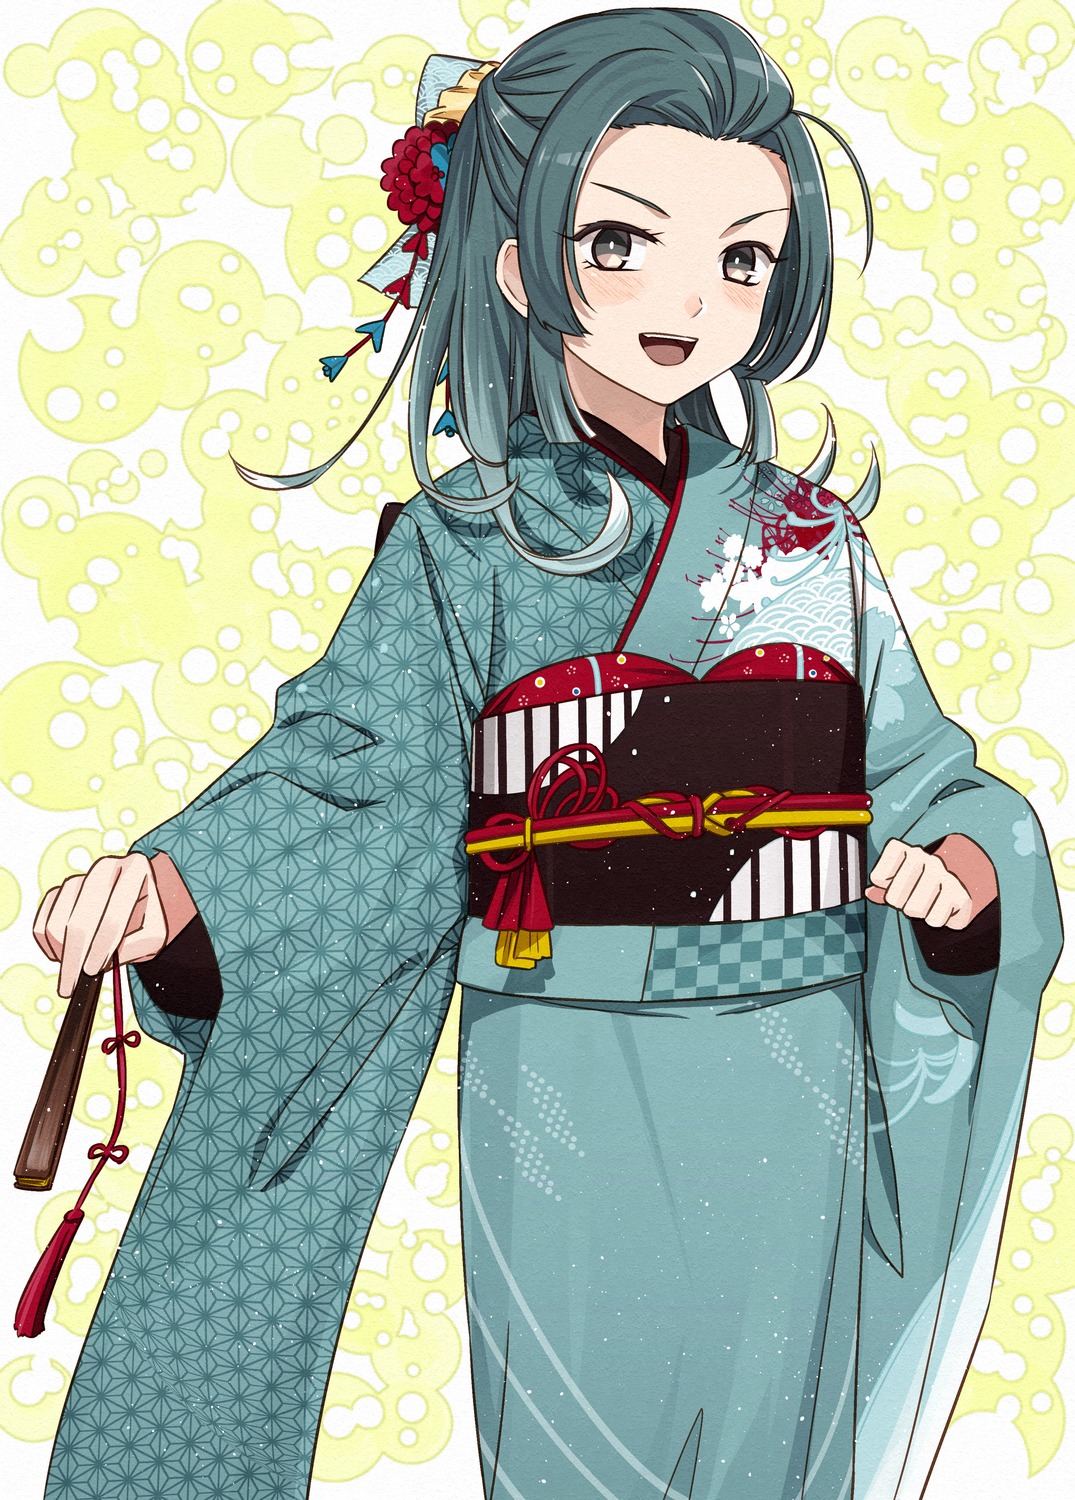 kanmiya_shinobu kantai_collection kimono suzunami_(kancolle)